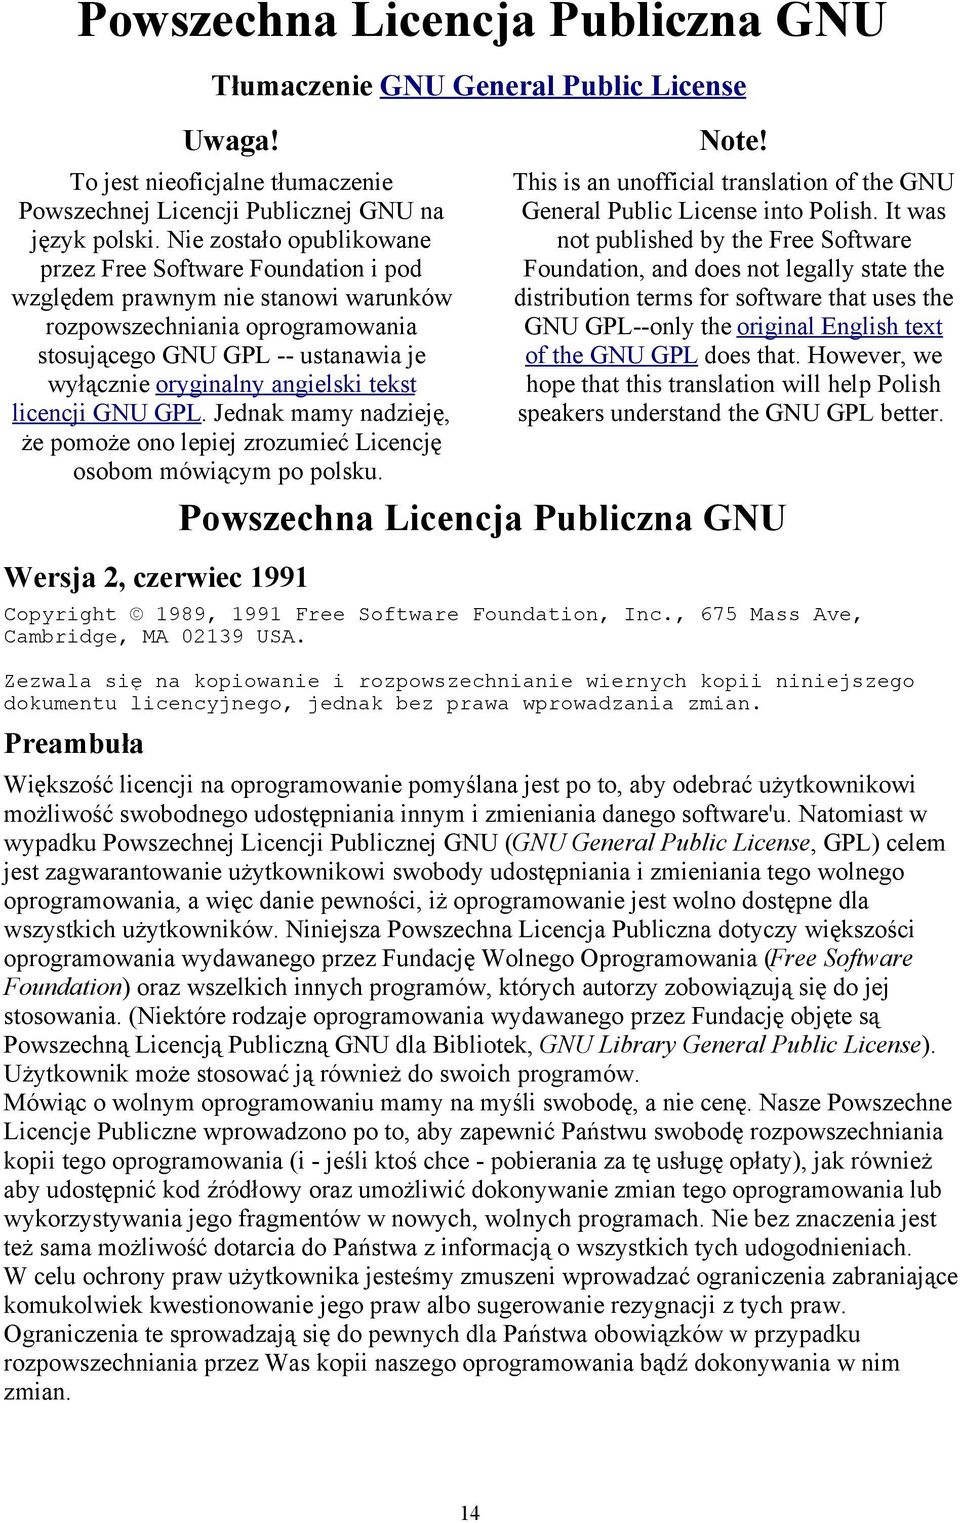 tekst licencji GNU GPL. Jednak mamy nadzieję, że pomoże ono lepiej zrozumieć Licencję osobom mówiącym po polsku. Wersja 2, czerwiec 1991 Note!